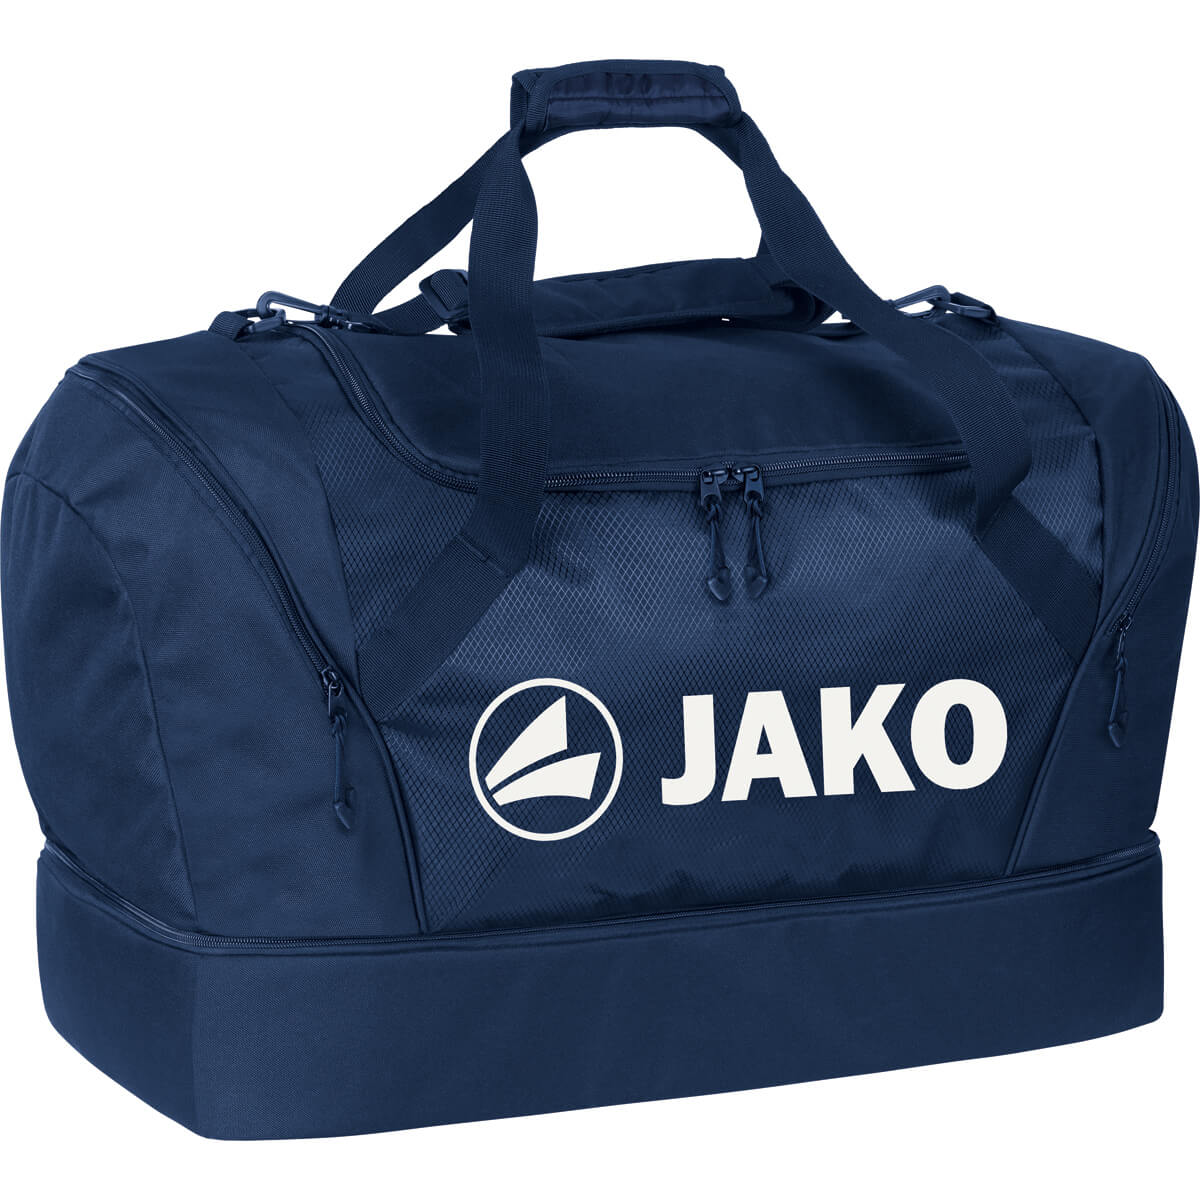 JAKO 2089-09 Sport Bag Navy